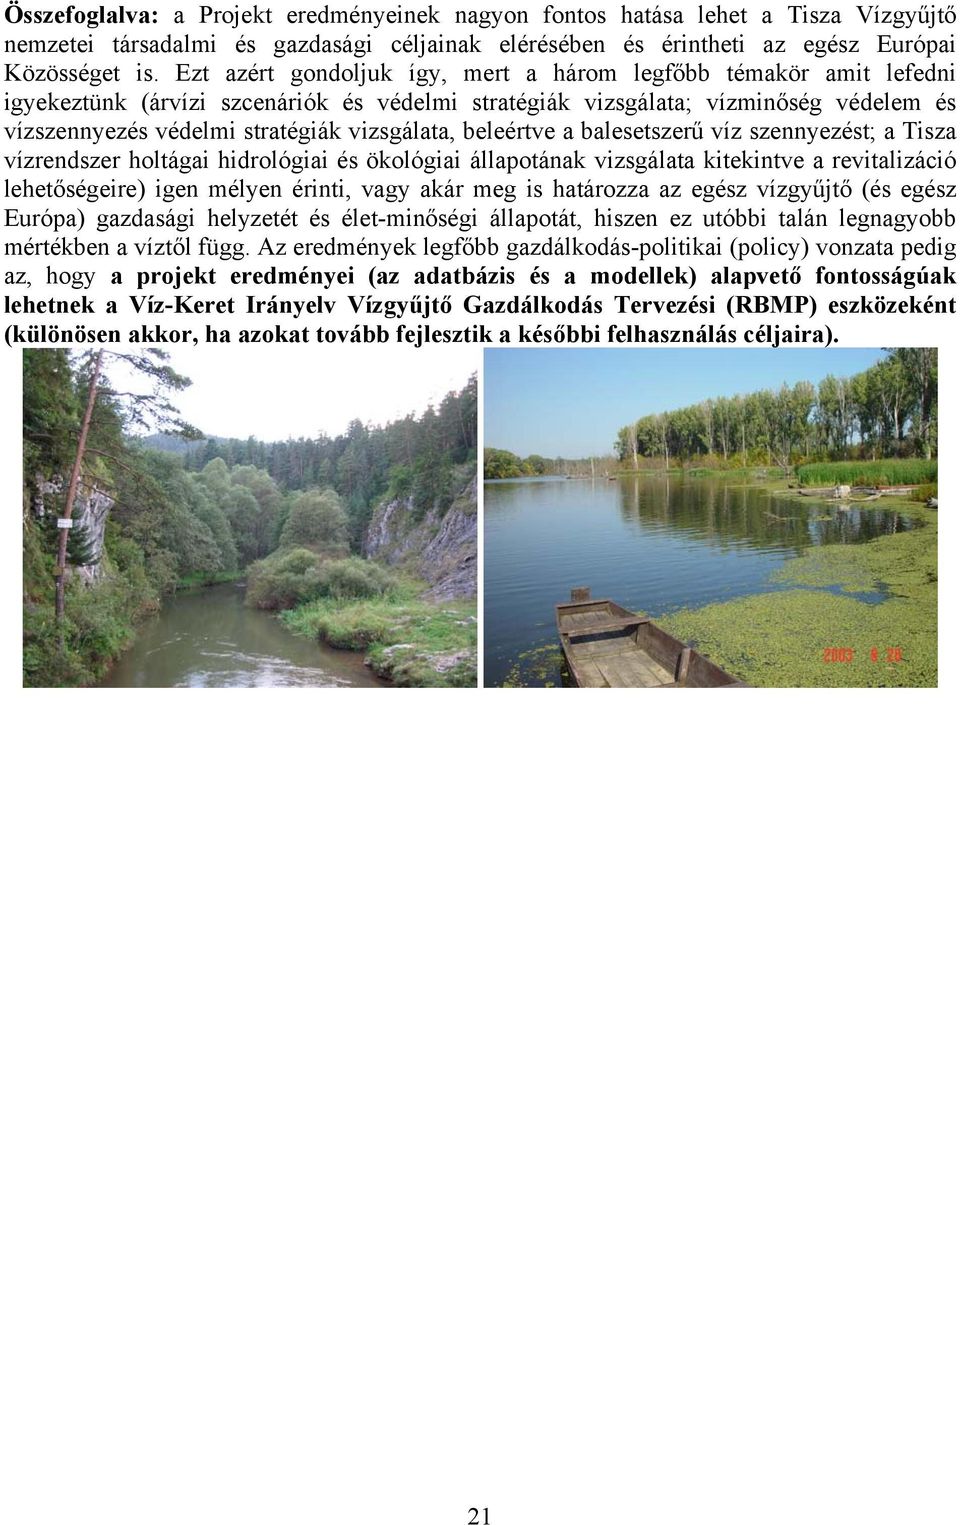 beleértve a balesetszerű víz szennyezést; a Tisza vízrendszer holtágai hidrológiai és ökológiai állapotának vizsgálata kitekintve a revitalizáció lehetőségeire) igen mélyen érinti, vagy akár meg is